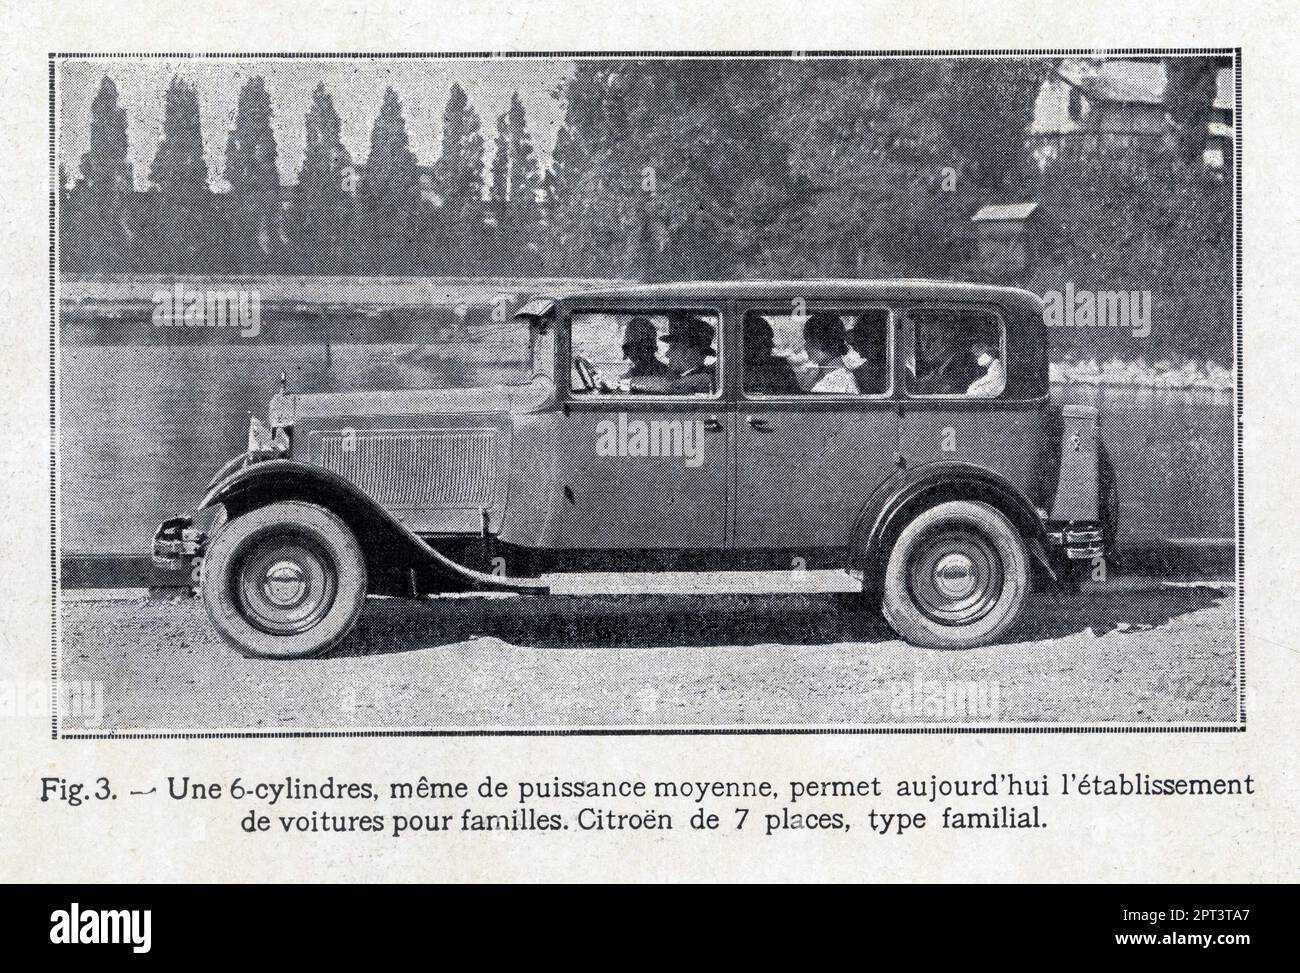 The 1929 Citroen delivery truck promoting Volez, Voguez, Voyagez